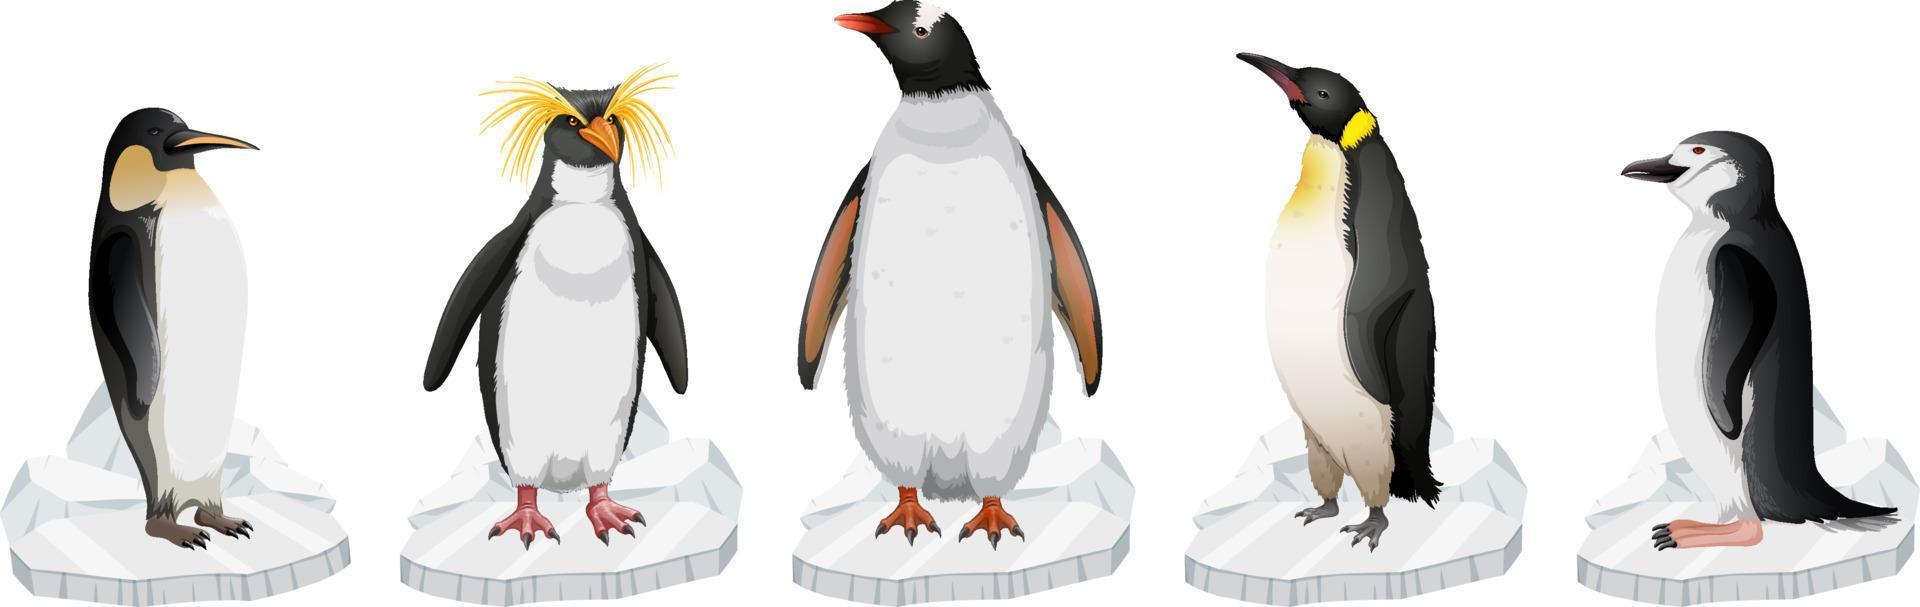 uppsättning av olika pingvintyper stående på is vektor